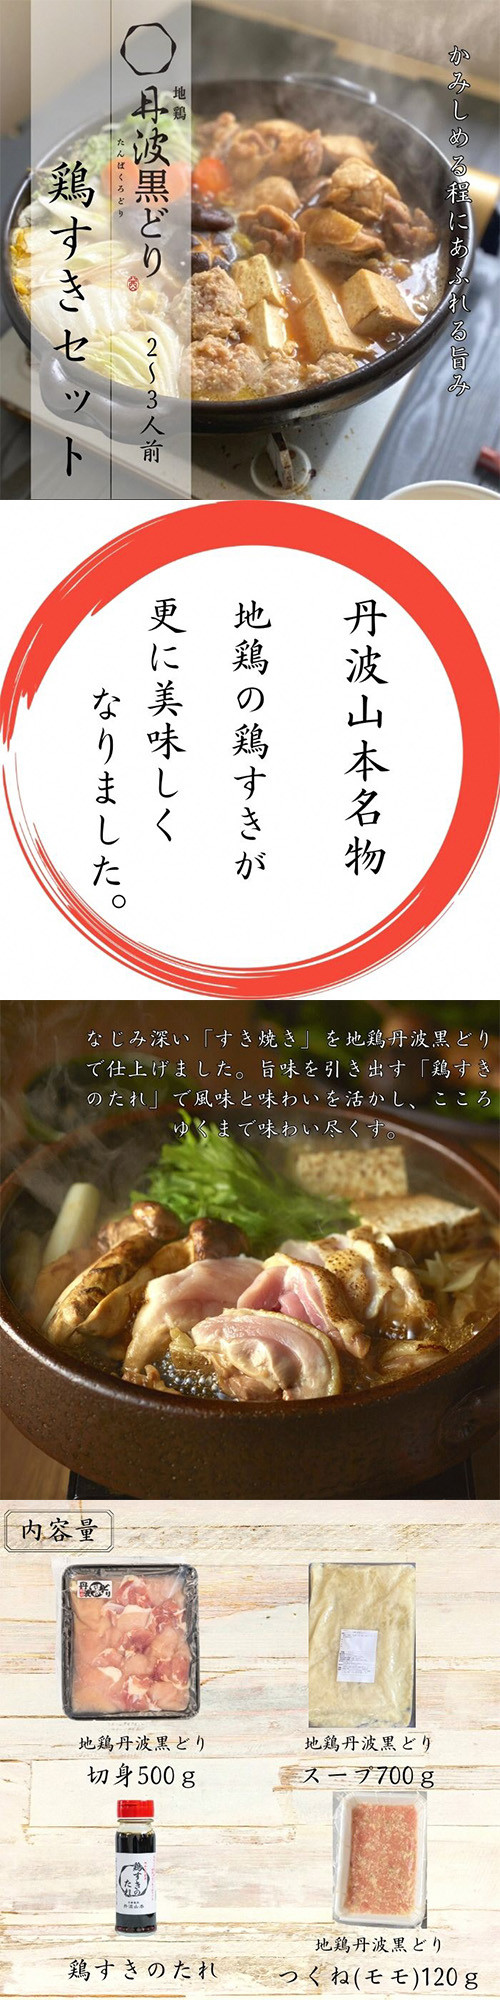 www.bolerio.com.tn - ふるさと納税 釧路市 釧路産馬肉ブロック(バラ肉